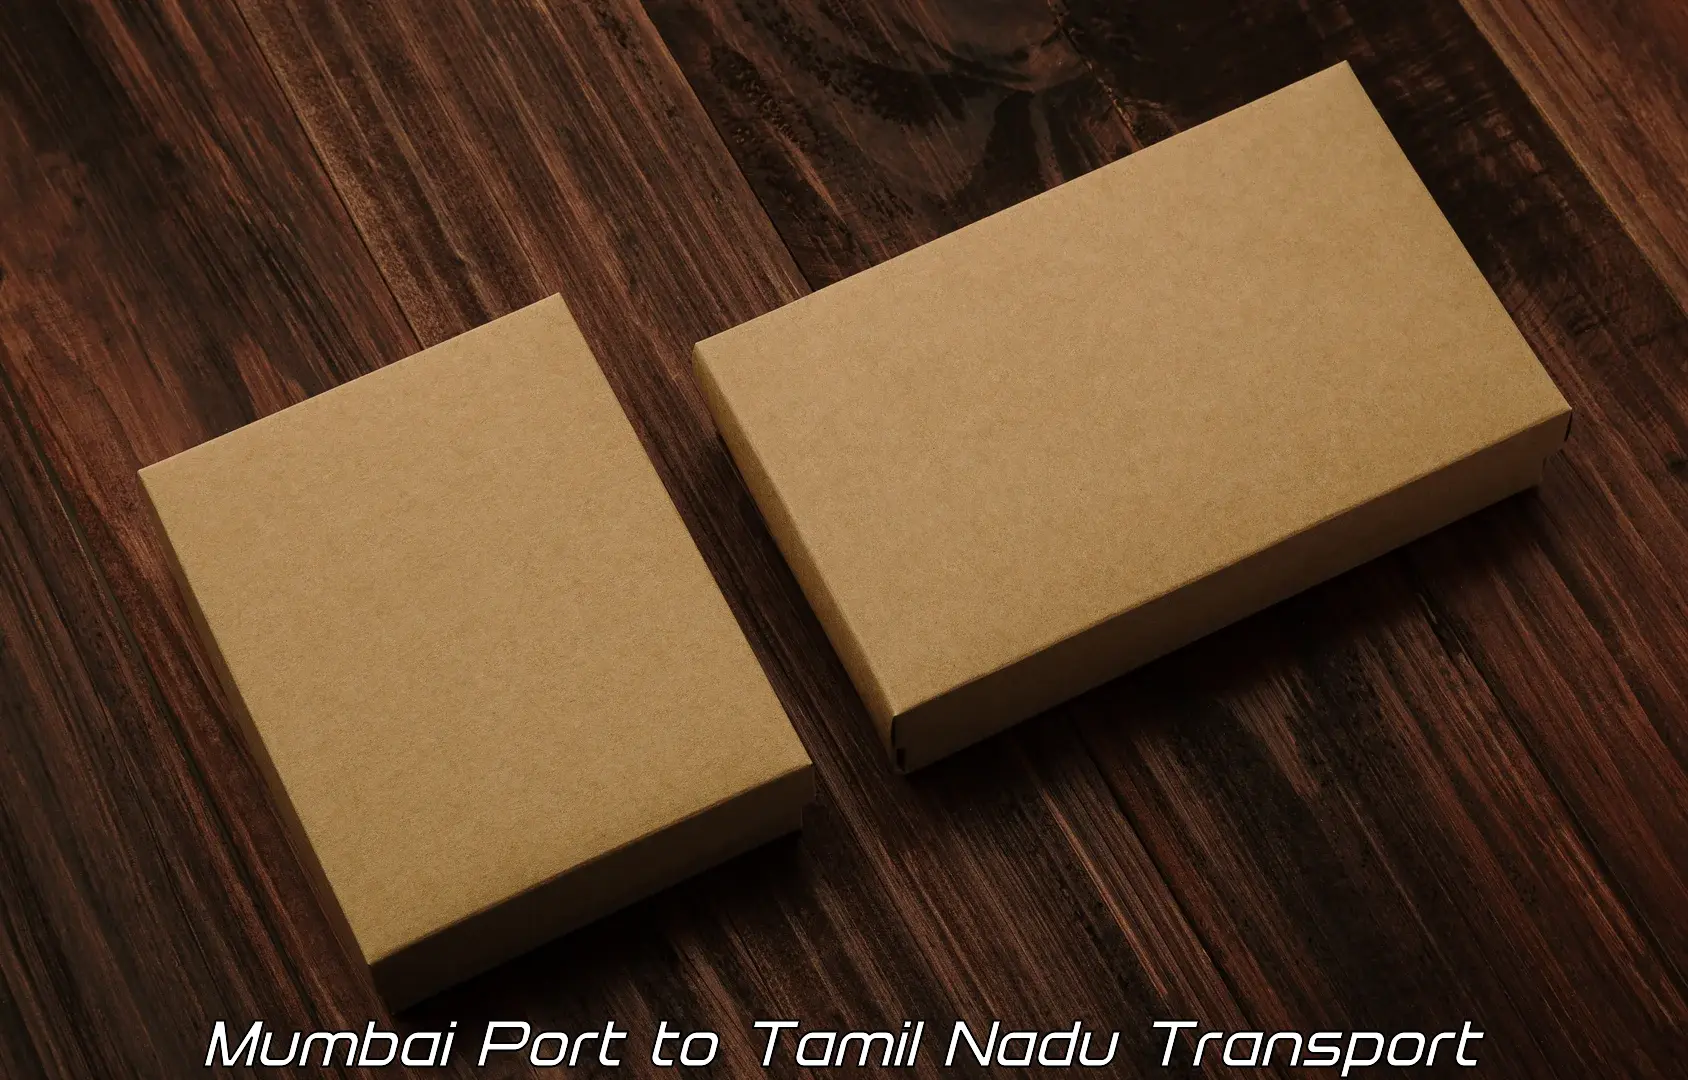 Daily transport service Mumbai Port to Thiruvarur